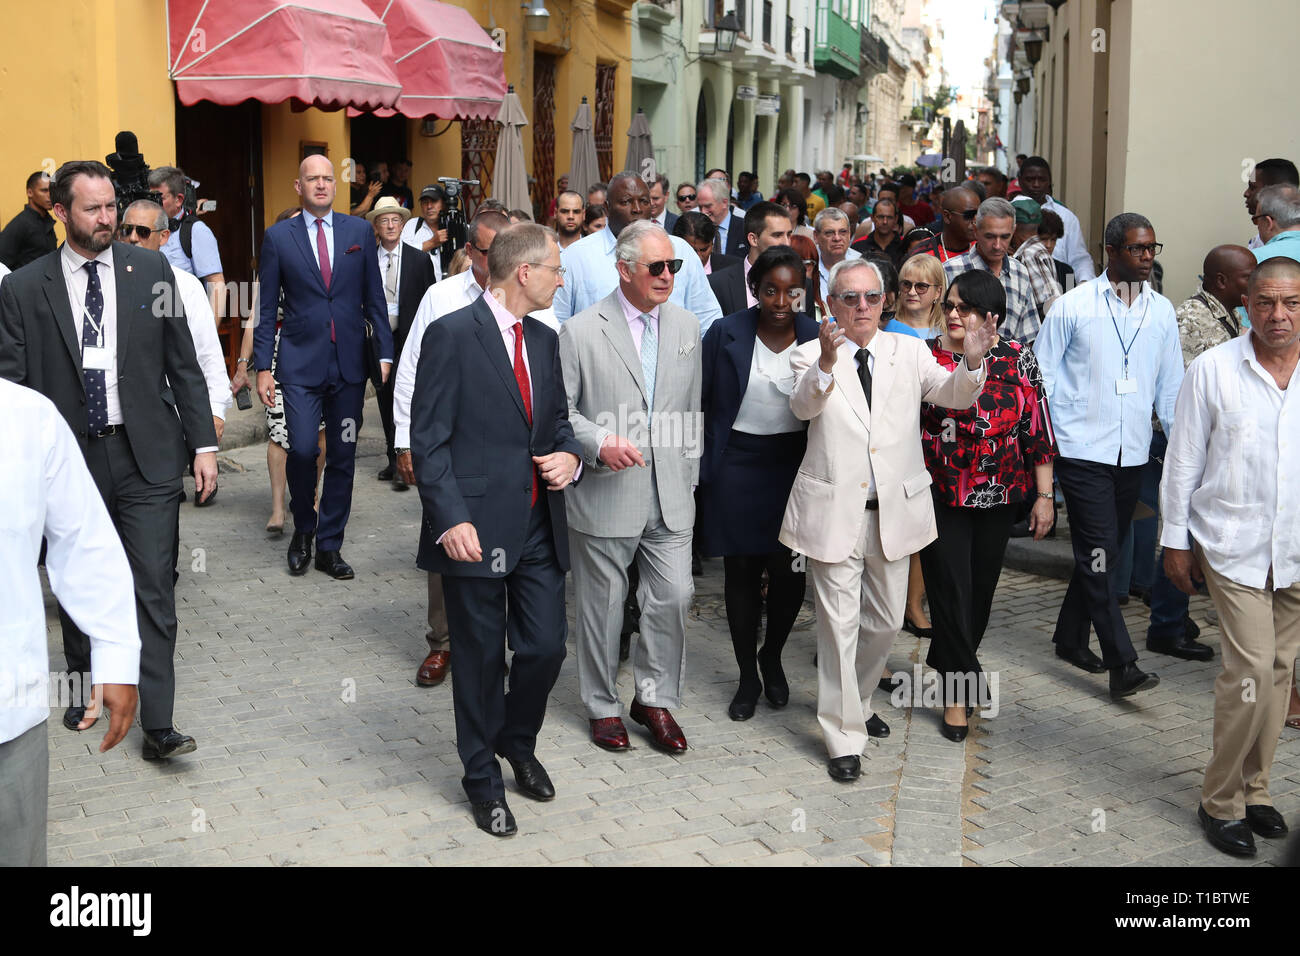 Der Prinz von Wales und die Herzogin von Cornwall eine Tour durch die Altstadt von Havanna, Kuba, während eine historische Reise, die feiert die kulturellen Bindungen zwischen dem Vereinigten Königreich und den kommunistischen Staat. Stockfoto